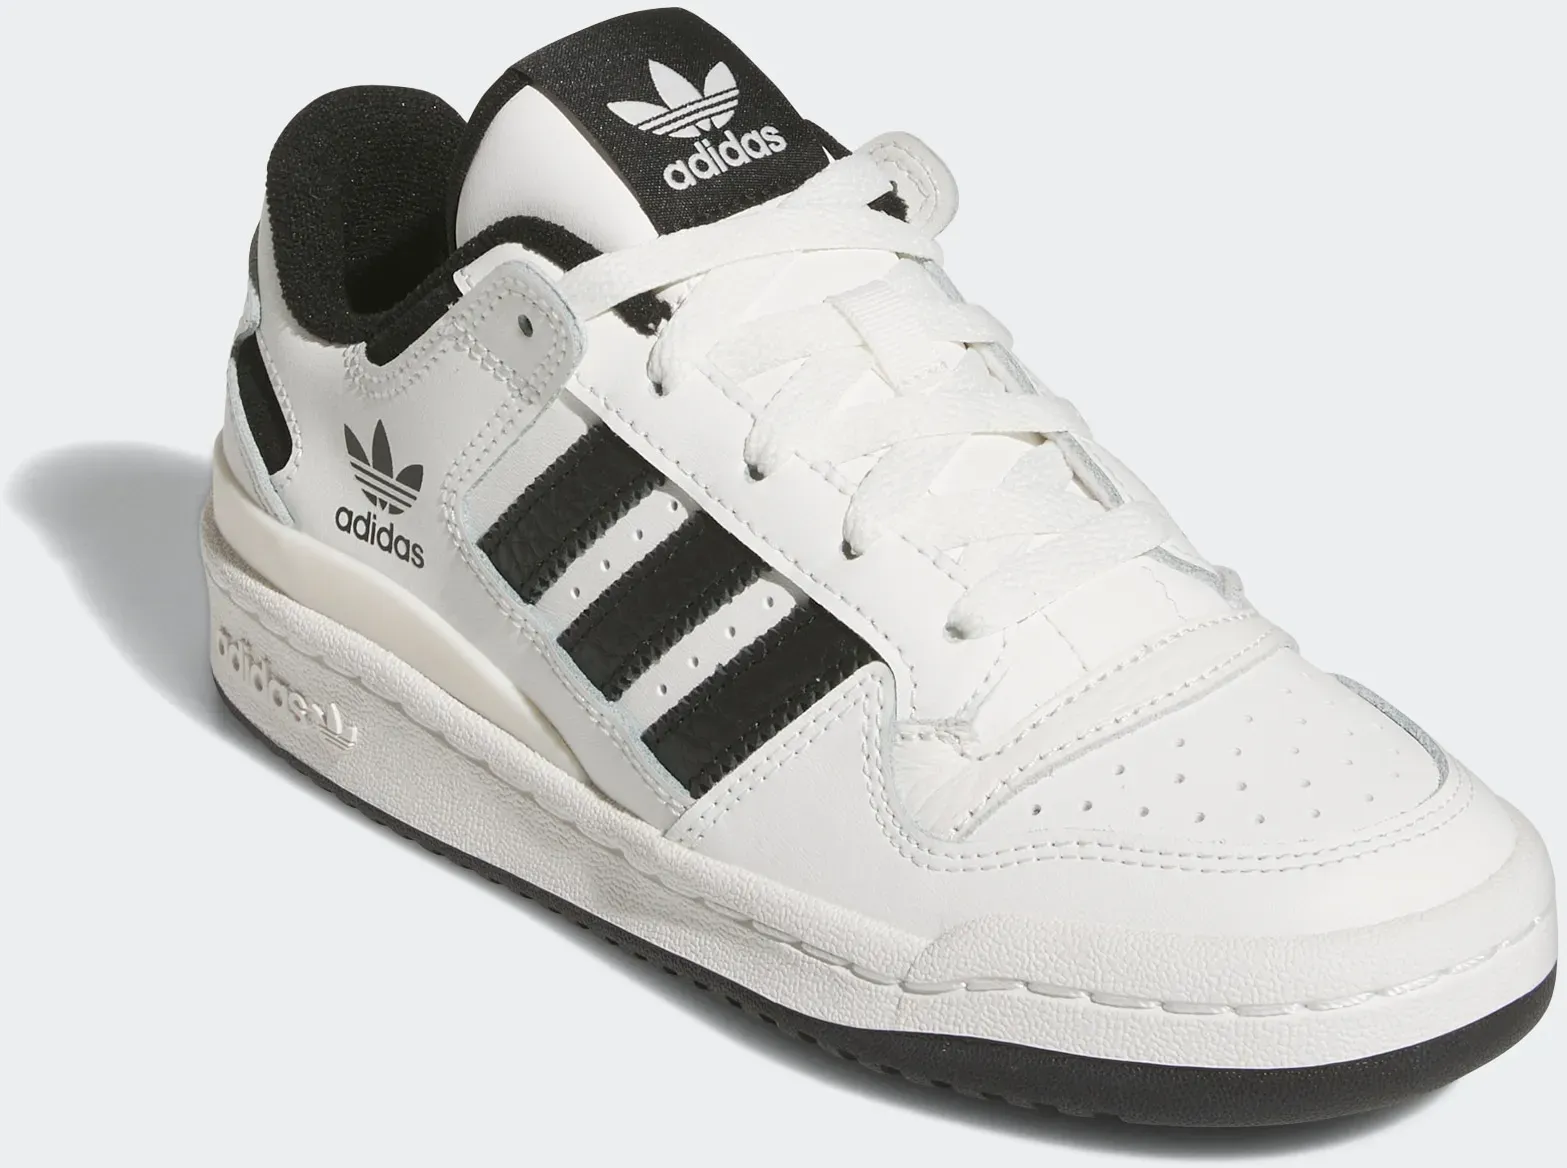 Sneaker ADIDAS ORIGINALS "FORUM LOW CL KIDS" Gr. 38,5, schwarz-weiß (core white, core black, white) Kinder Schuhe Basketballschuhe